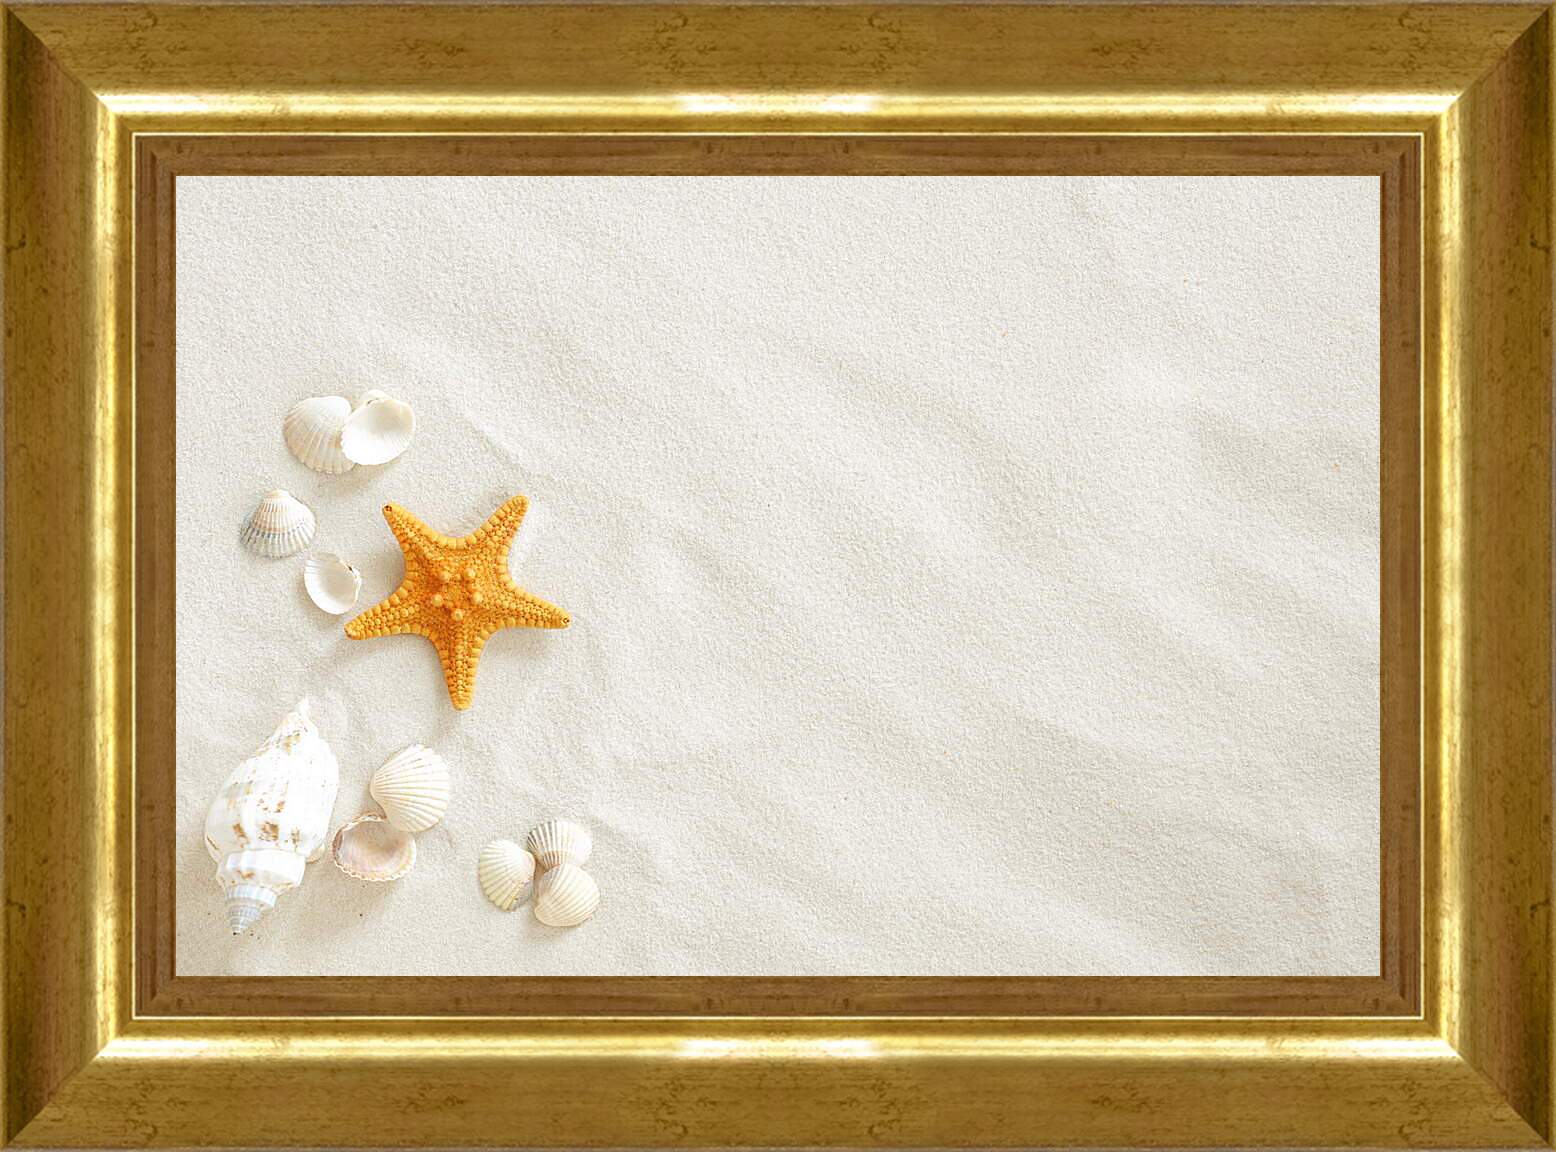 Картина в раме - Ракушки и звезда на песке
